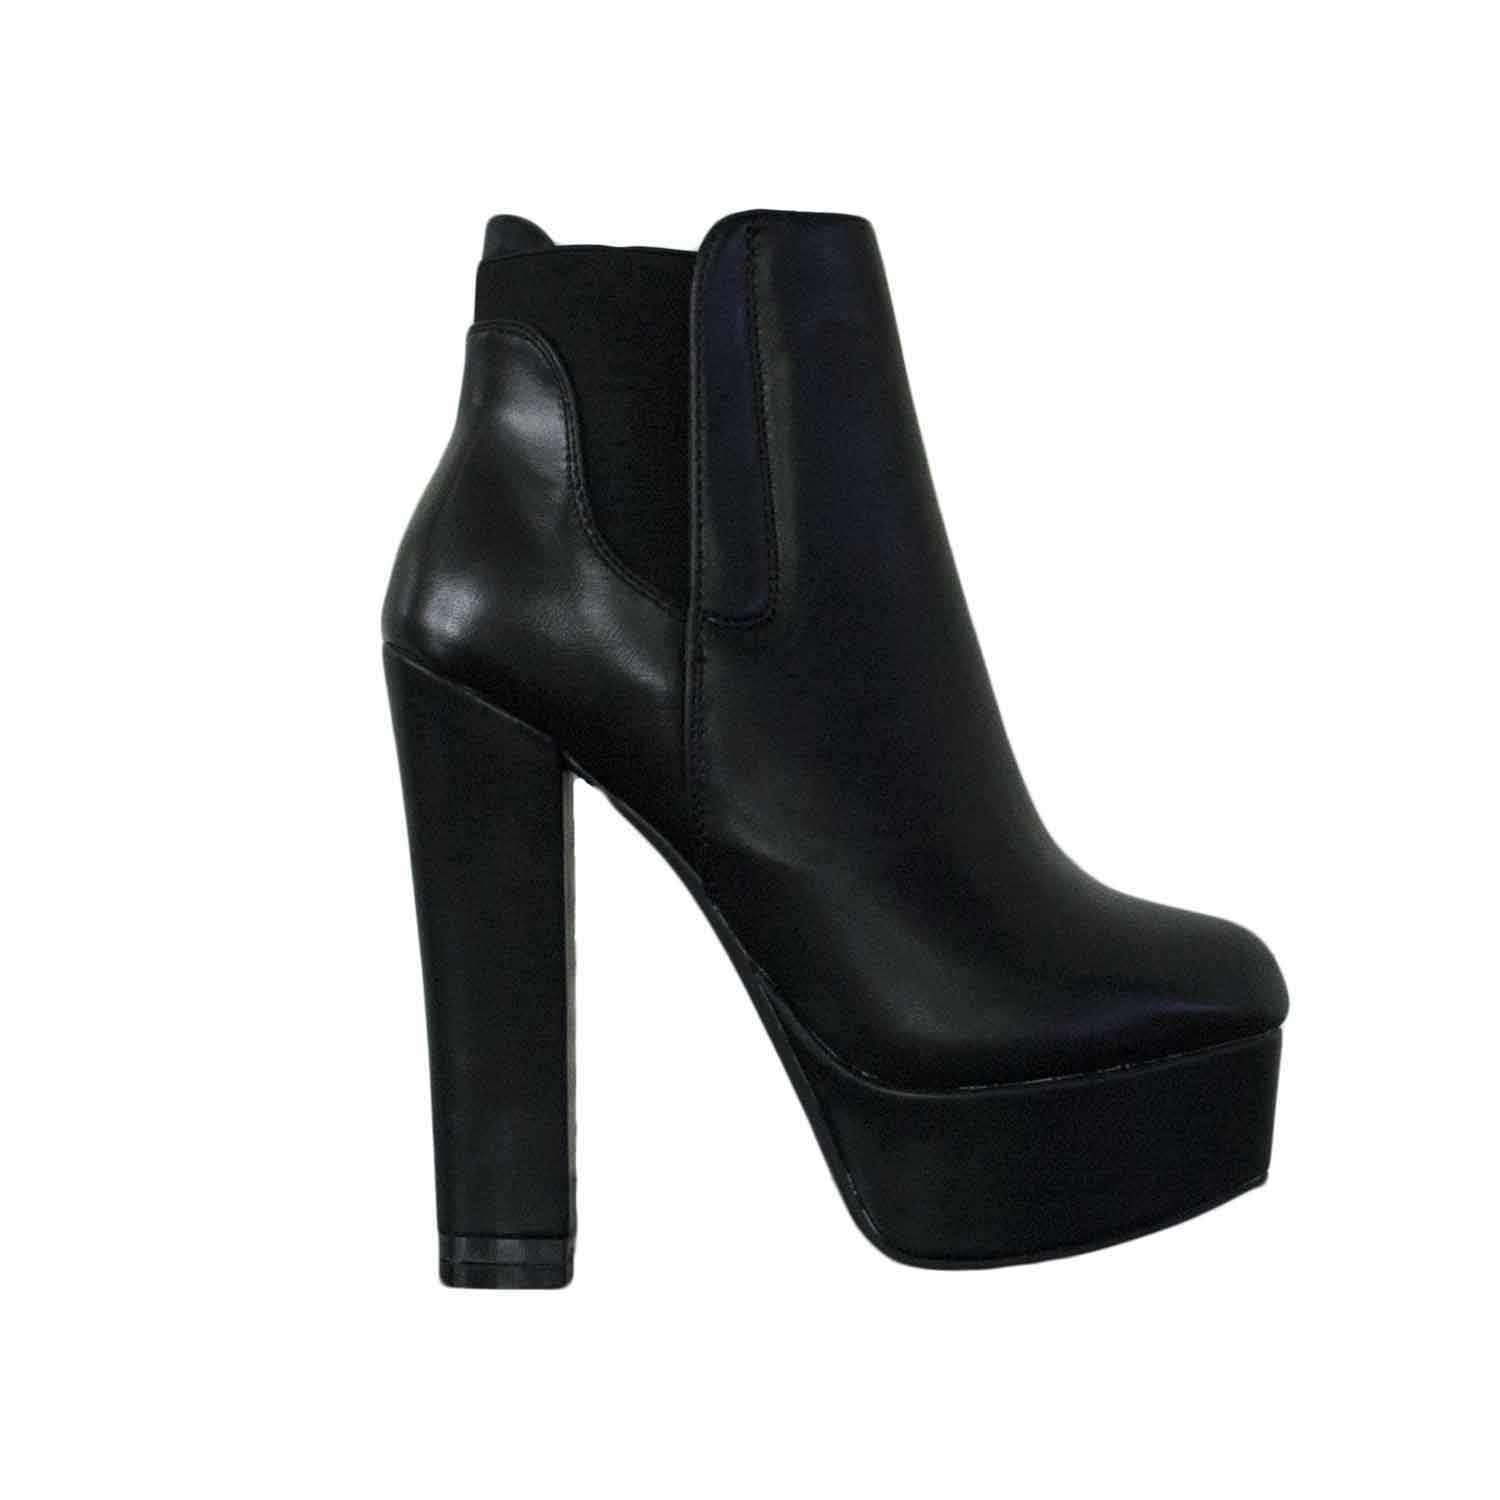 Scarpe donna tronchetto nero ecopelle elastico tacco alto comfort donna  tronchetti Malu Shoes | MaluShoes